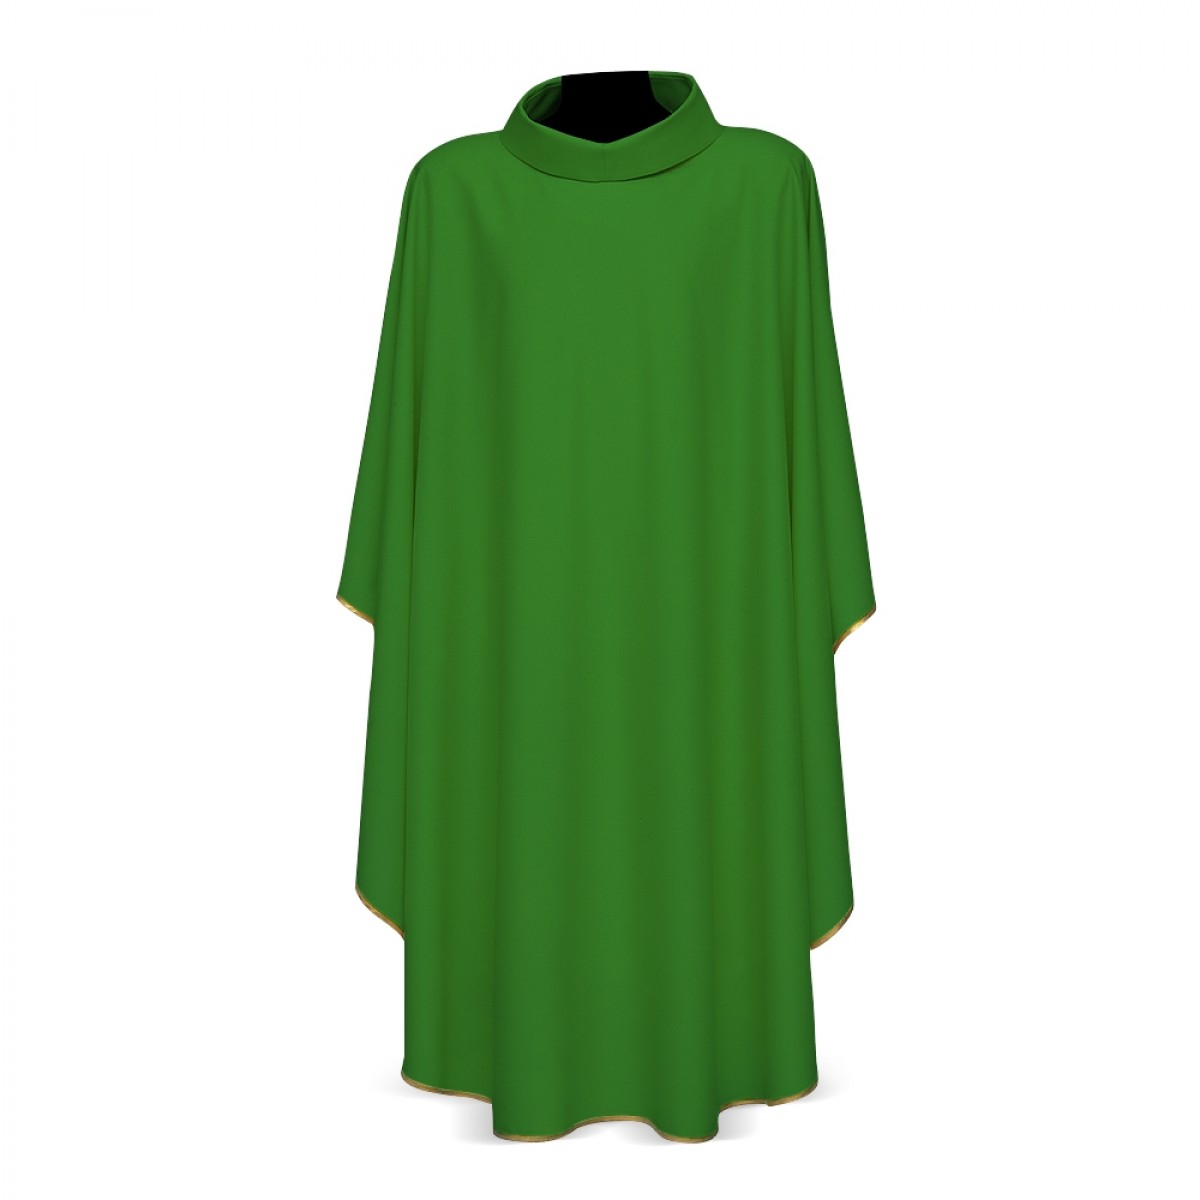 Casula in lana, dis. 5506 COLLO ANELLO verde